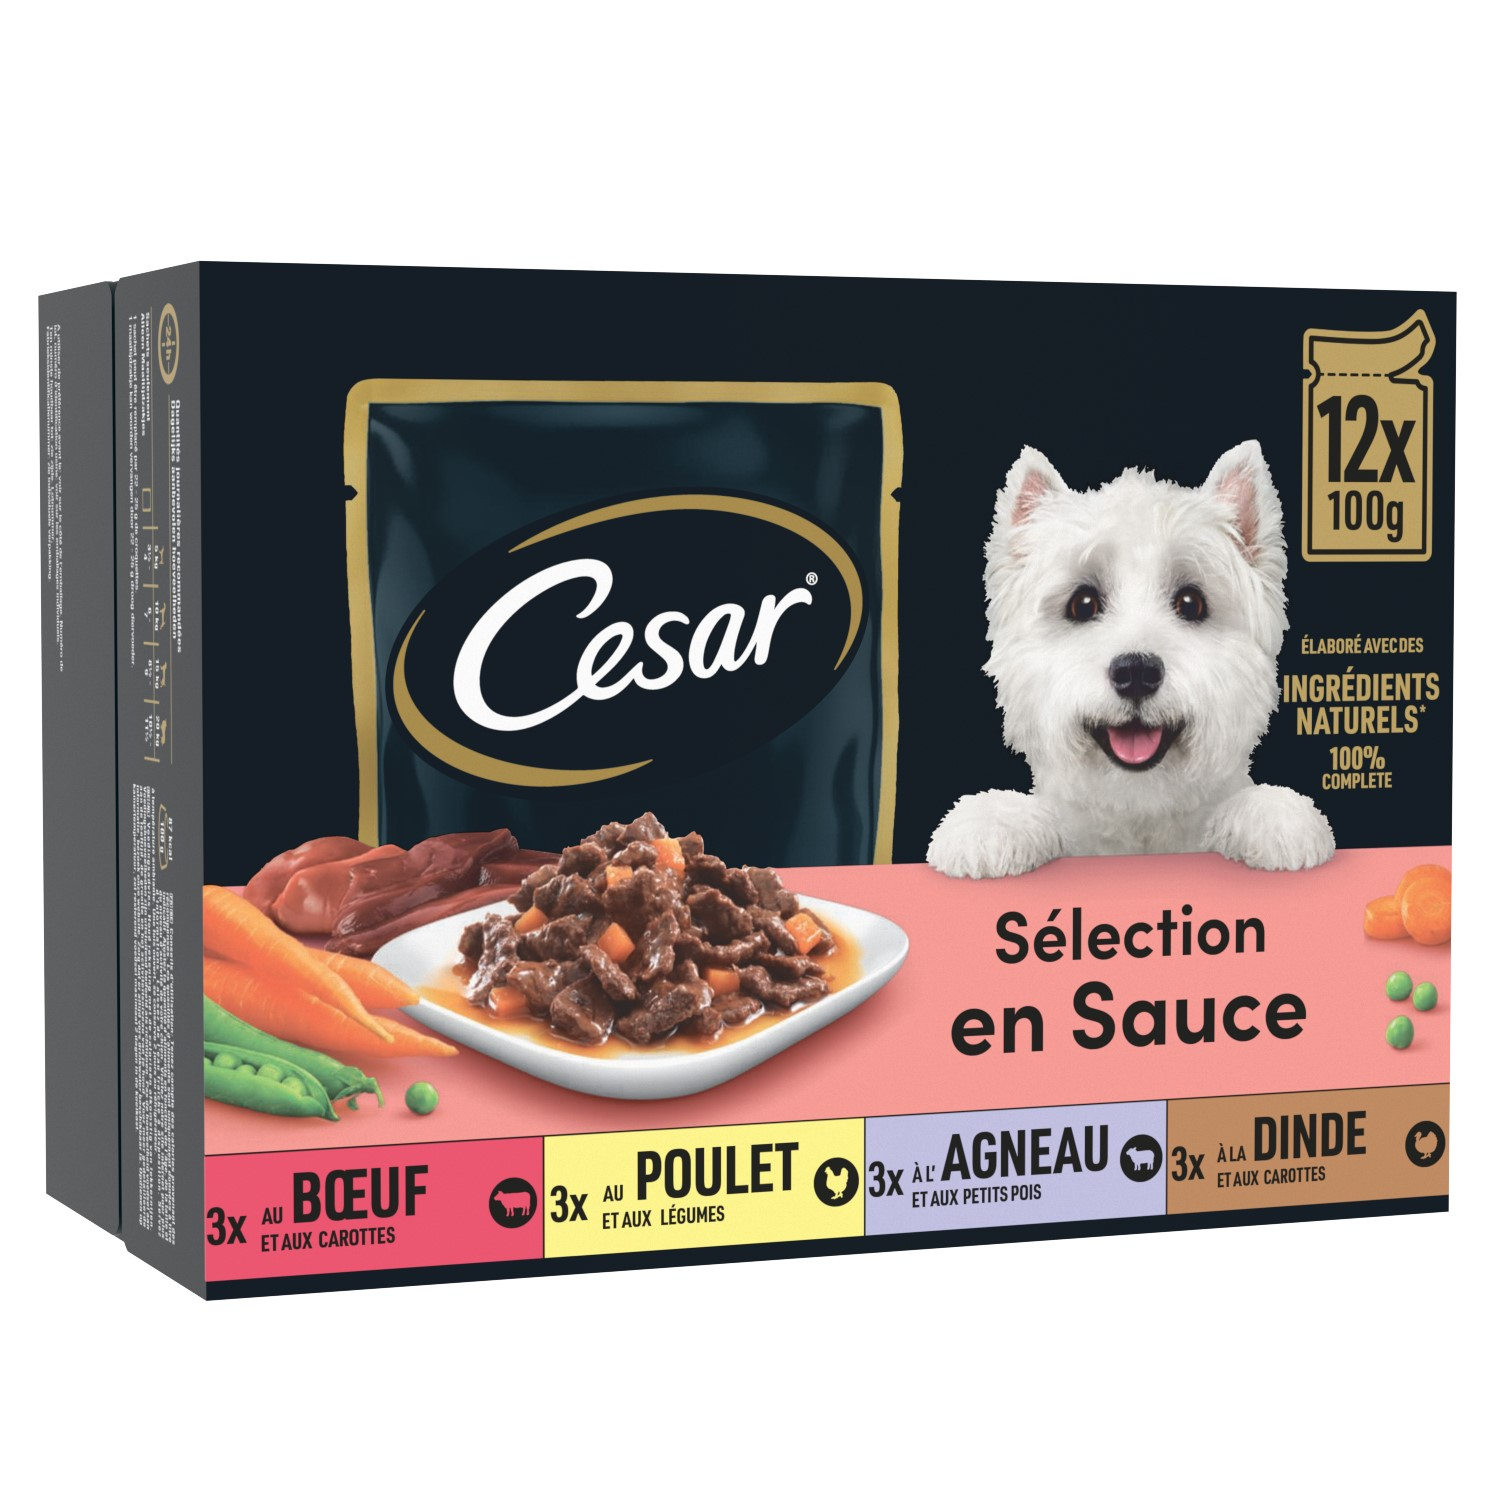 CESAR Selection in Sauce für erwachsene Hunde - 12 x 100g